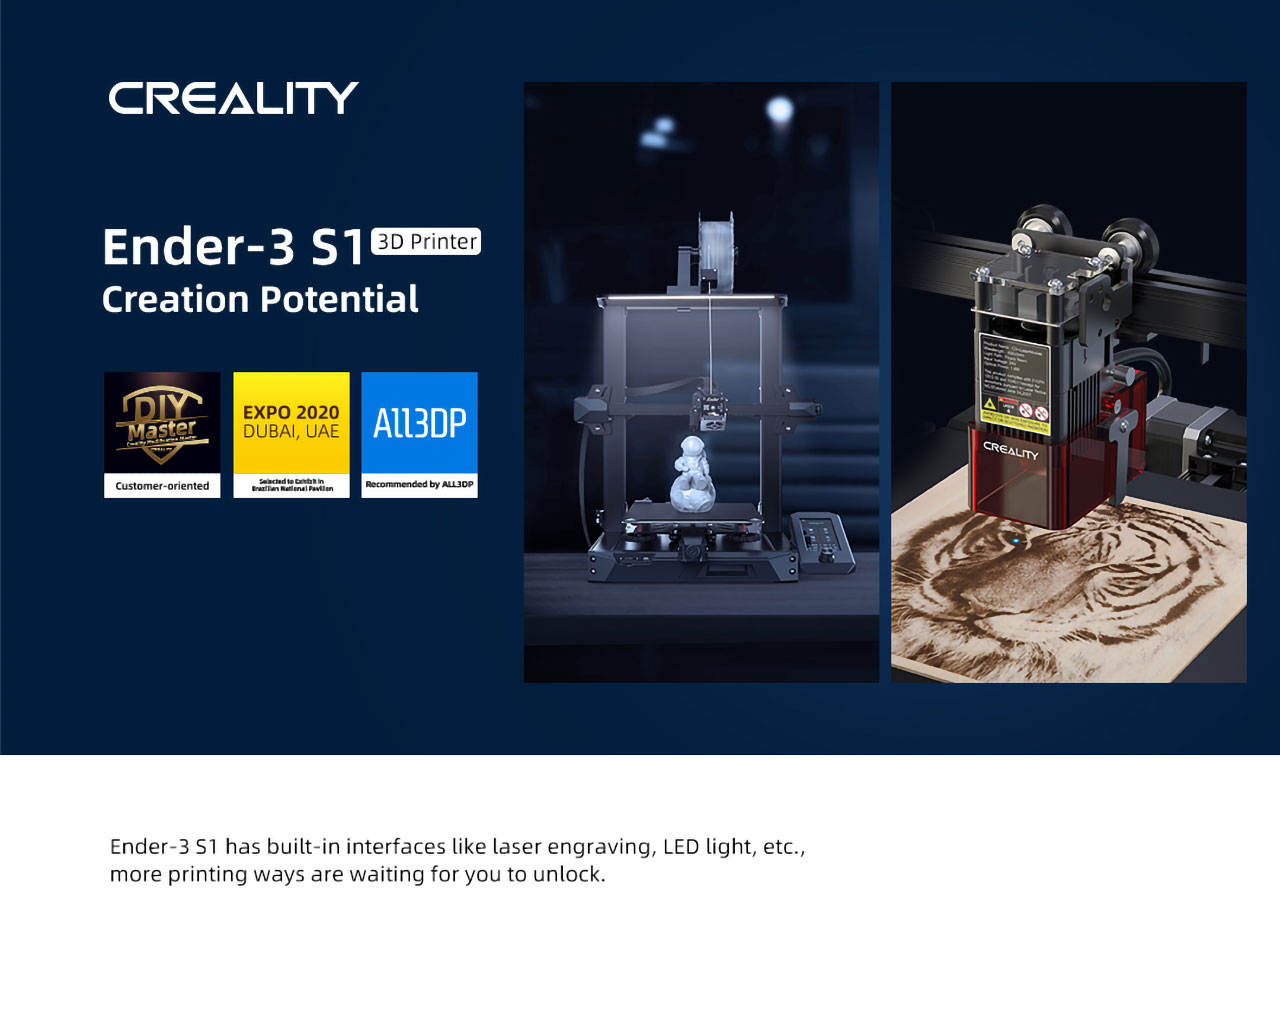 Meral Erden: Uygun Fiyata Yüksek Kaliteli 3D Yazıcı: Creality Ender-3 S1 61